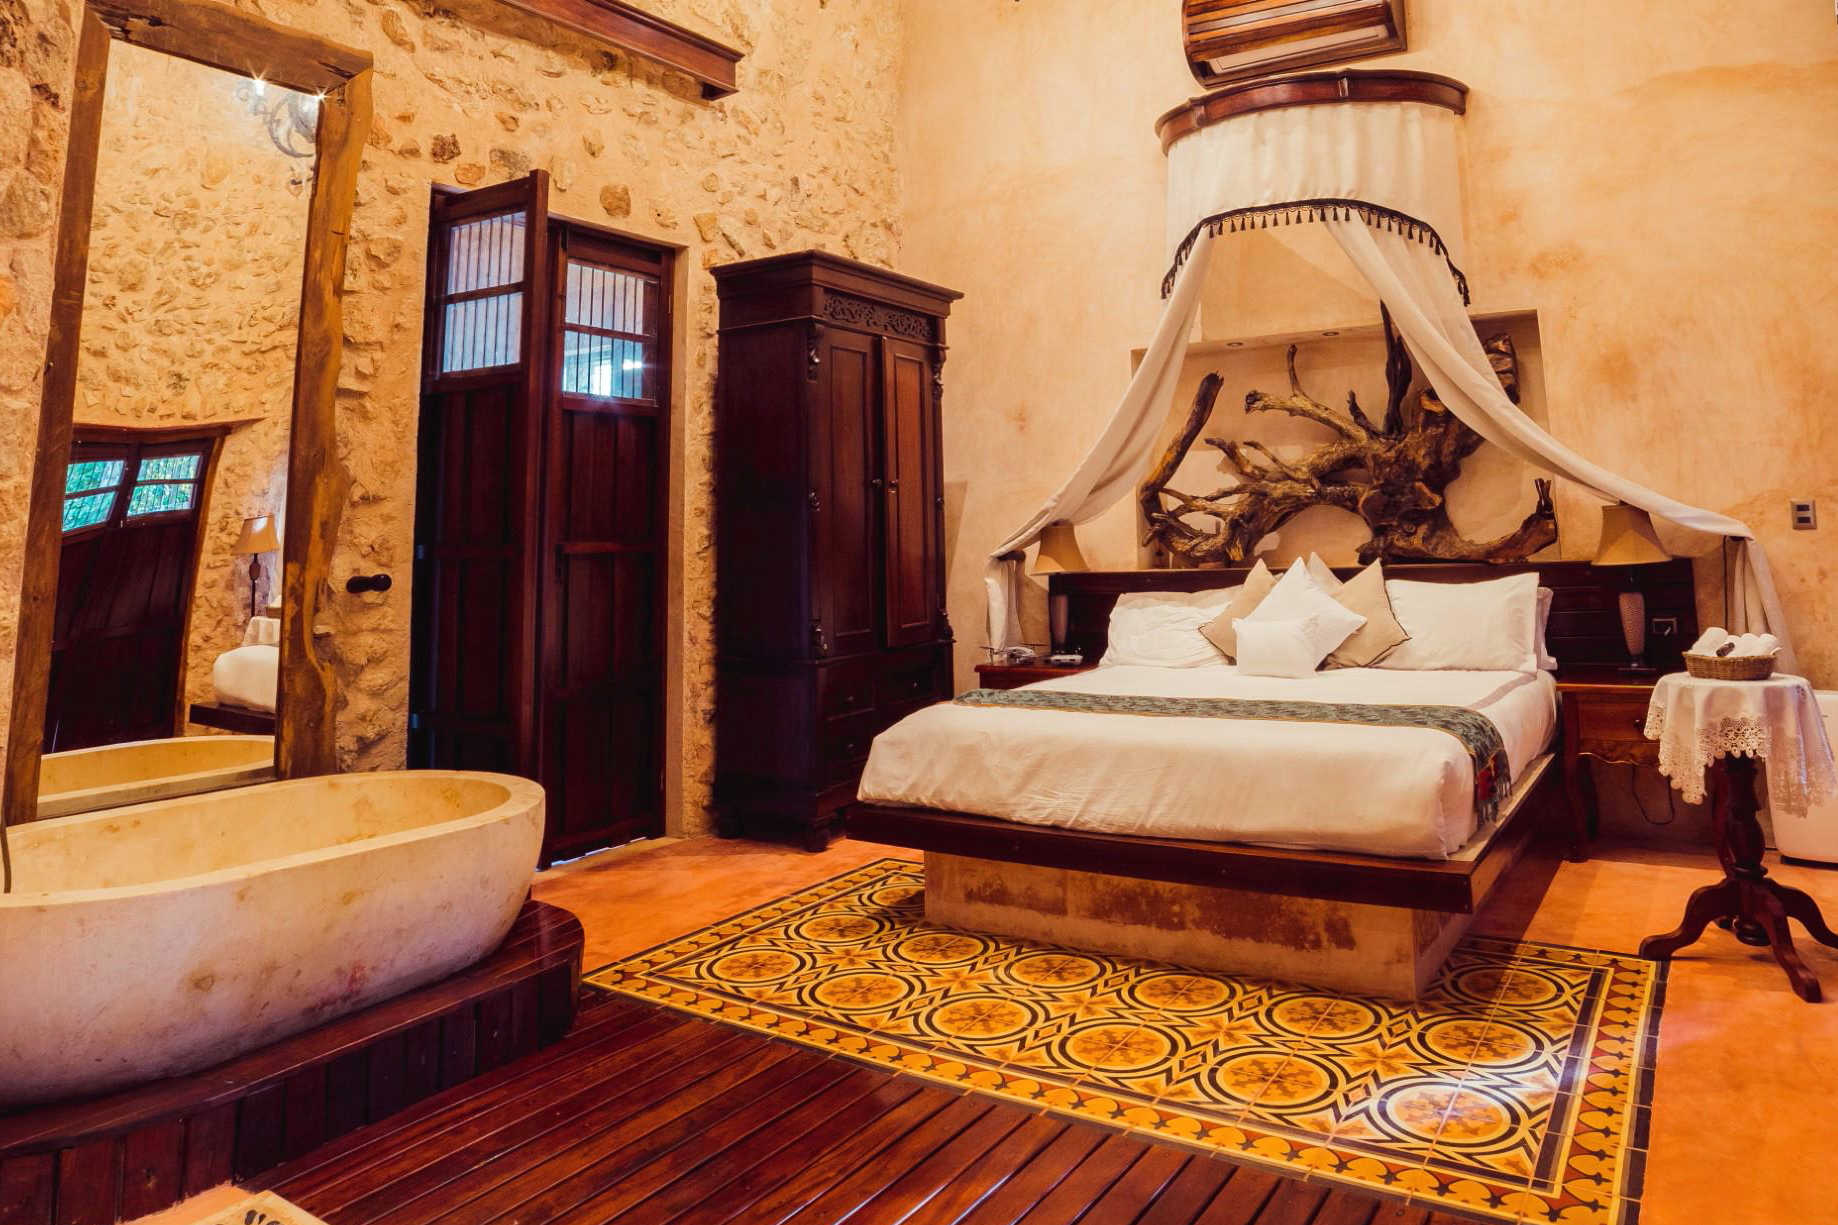 Room at El Gran Encomendero, a Vignette Collection hotel. Click to enlarge.